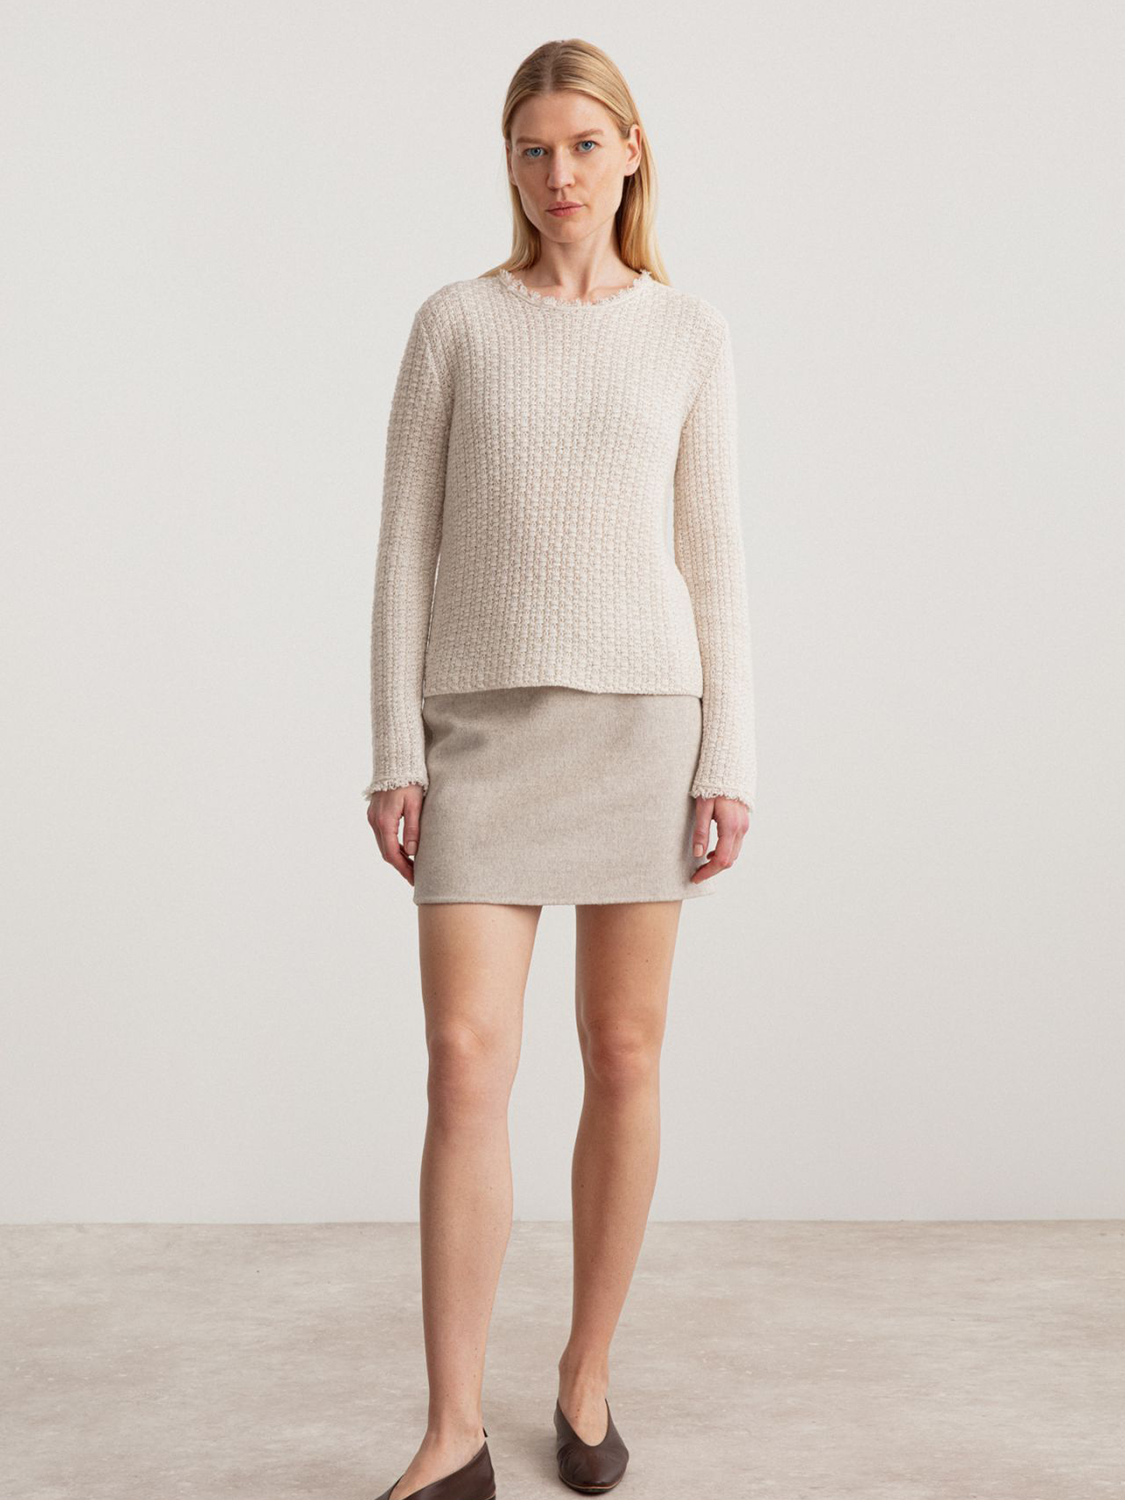 Iris von Arnim Dover – mini skirt made of cashmere and virgin wool mix  beige 34